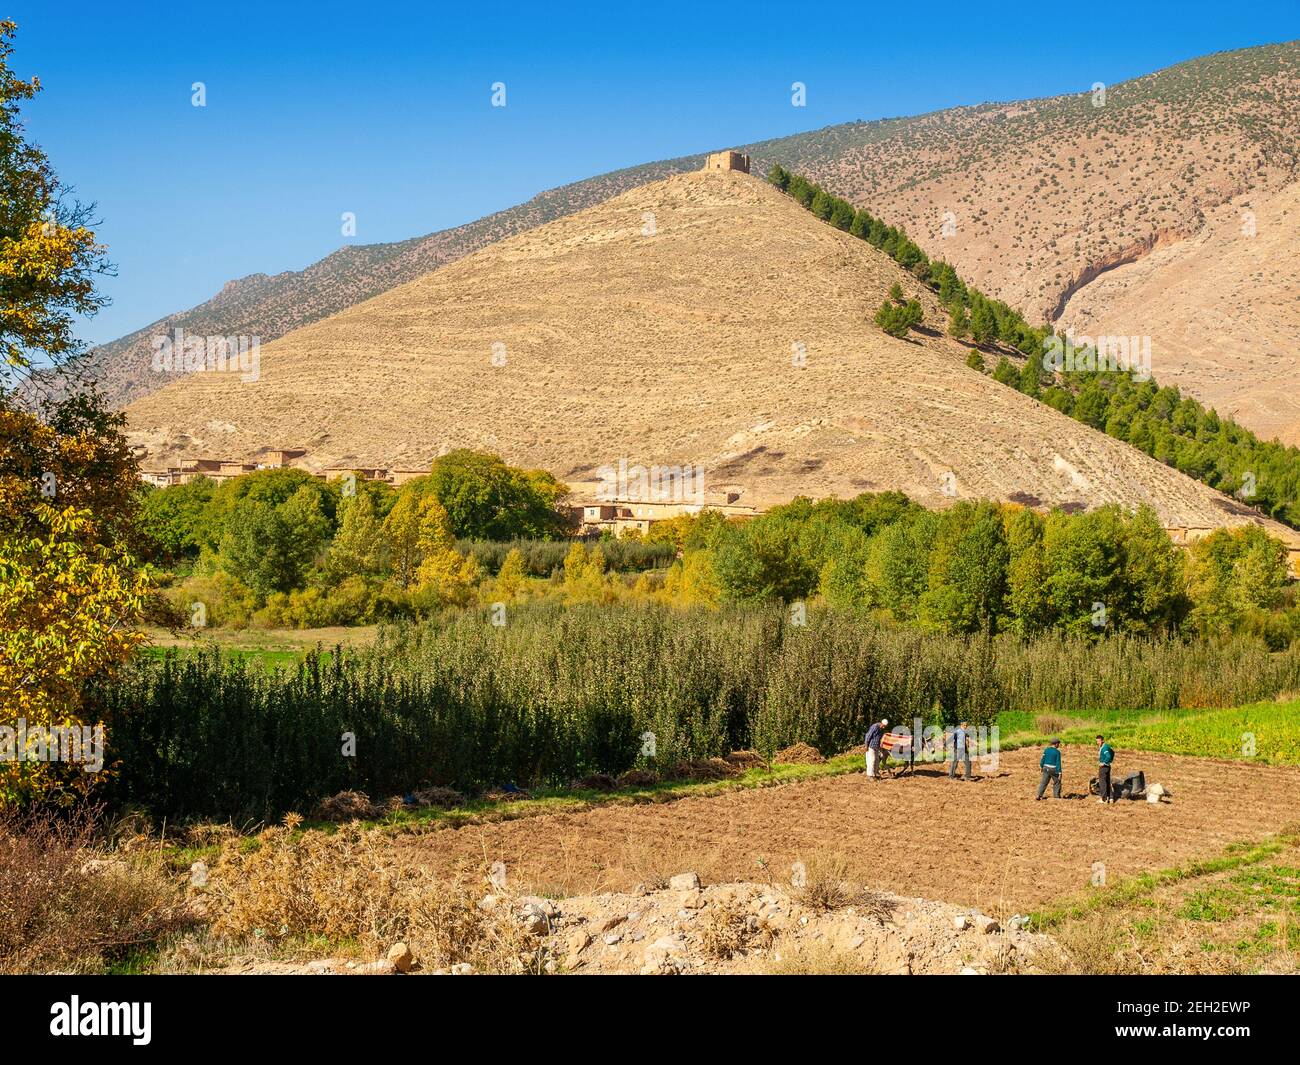 La fertile valle di Ait Bougmez / Bougoumez nel Regione di M'Goun delle montagne dell'Atlante marocchino Foto Stock